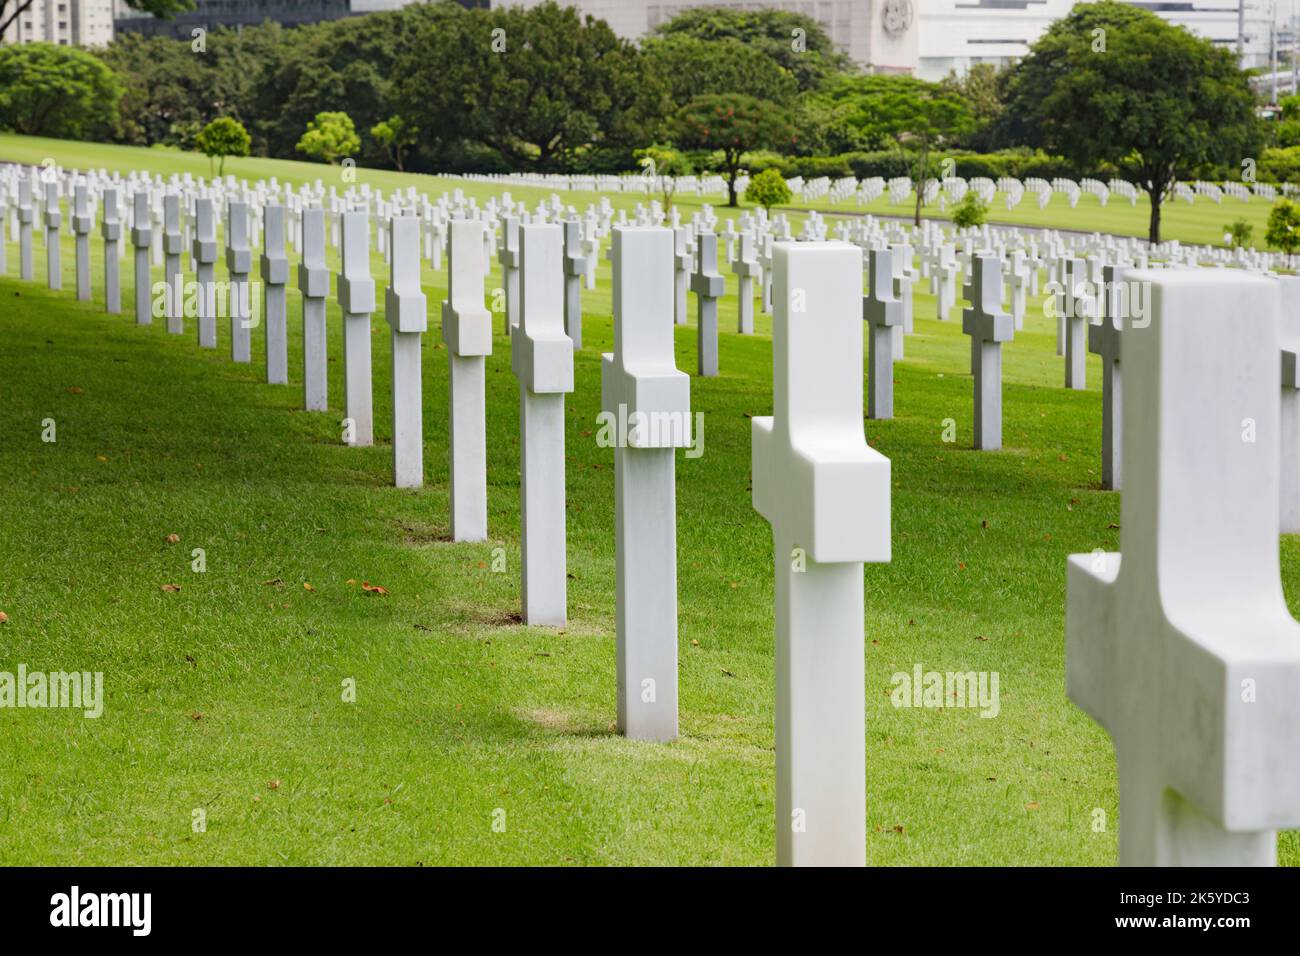 Manila American Cemetery and Memorial, auf dem Mitglieder der amerikanischen und philippinischen Streitkräfte, die WW2 auf den Philippinen getötet wurden, verfielen Stockfoto